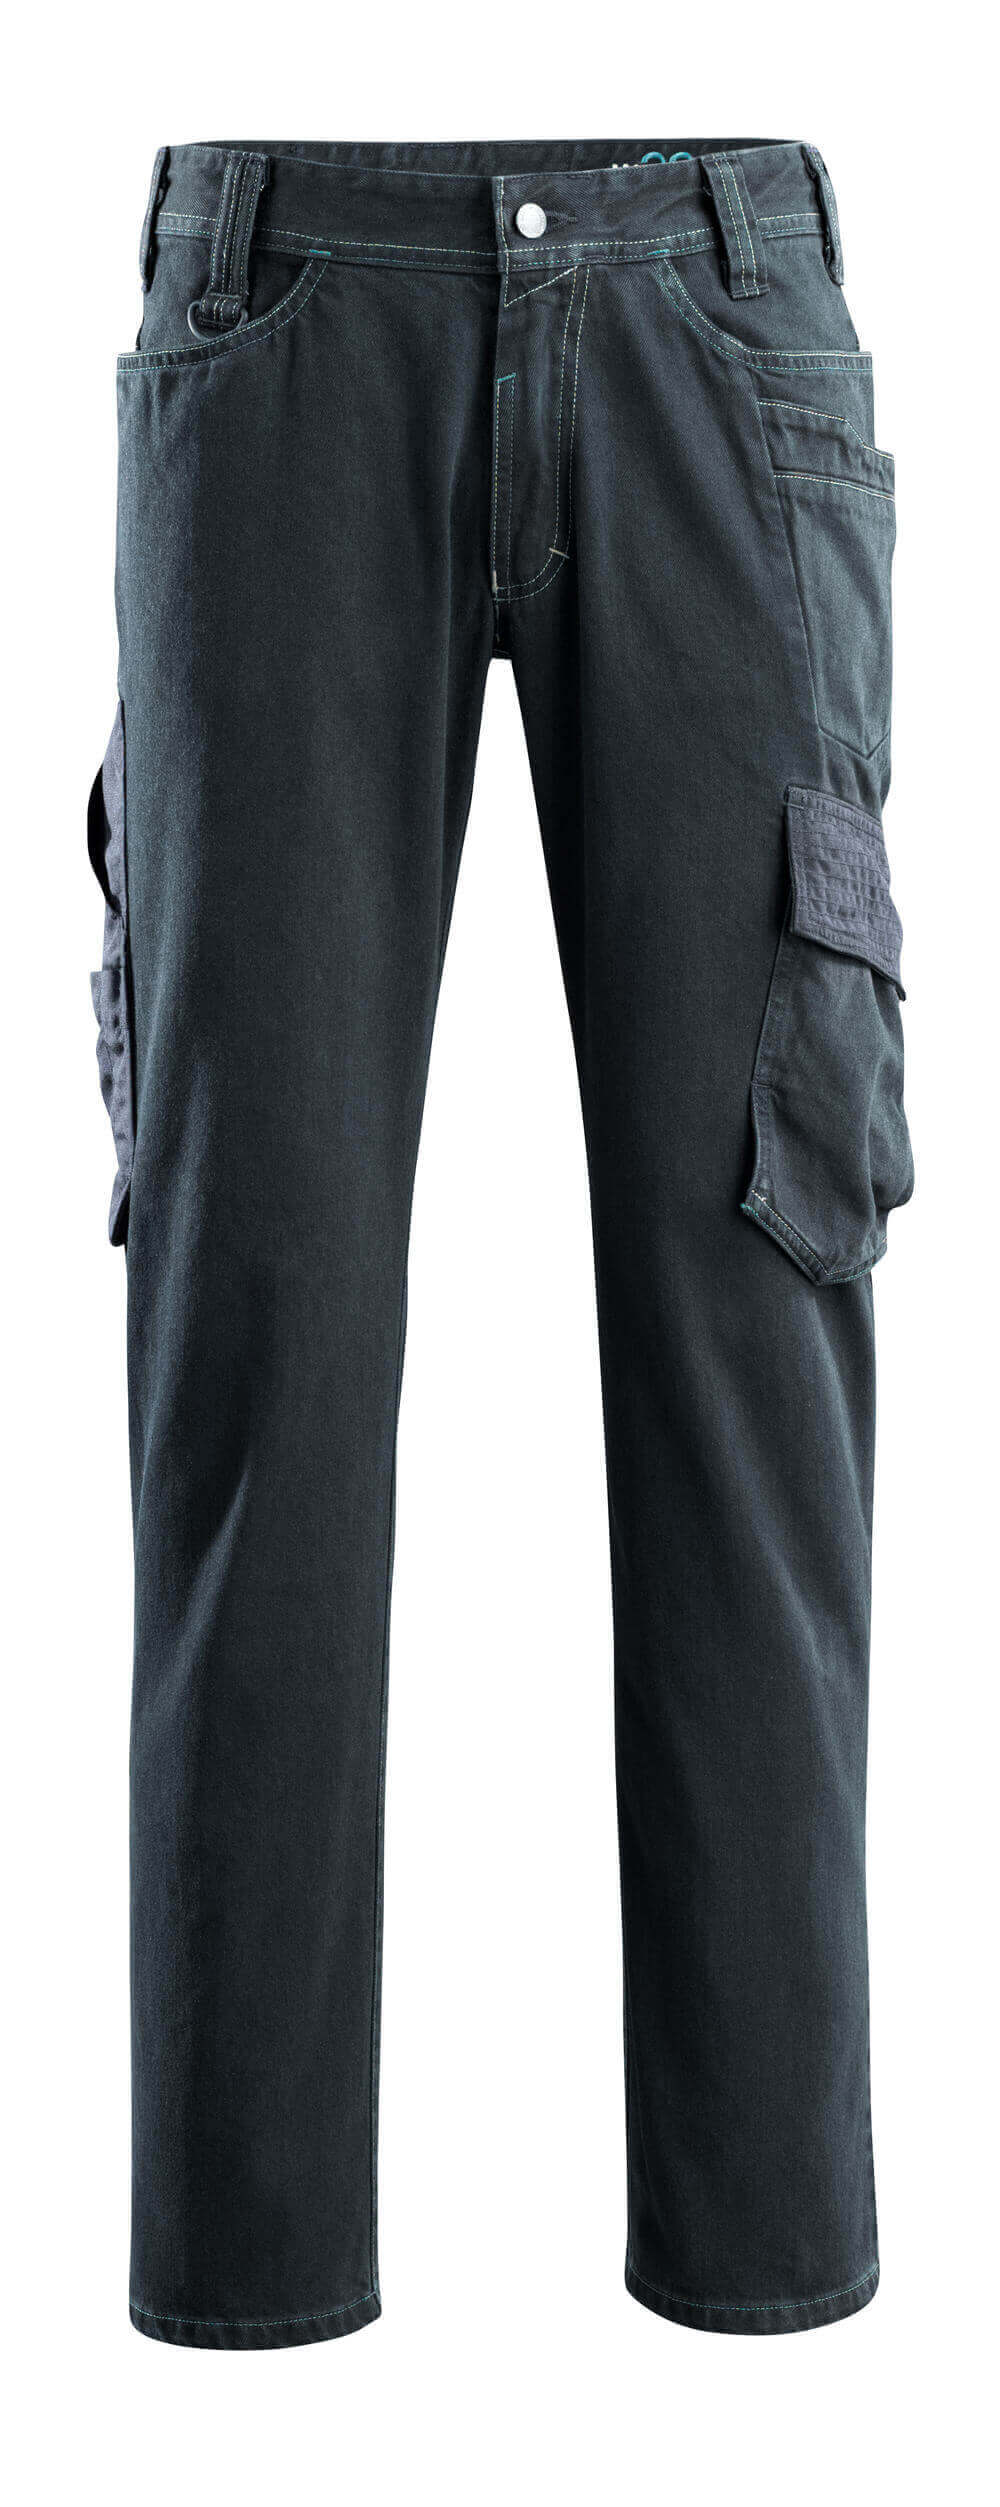 15279-207-86 Jeans met dijbeenzakken - donkerblauw denim